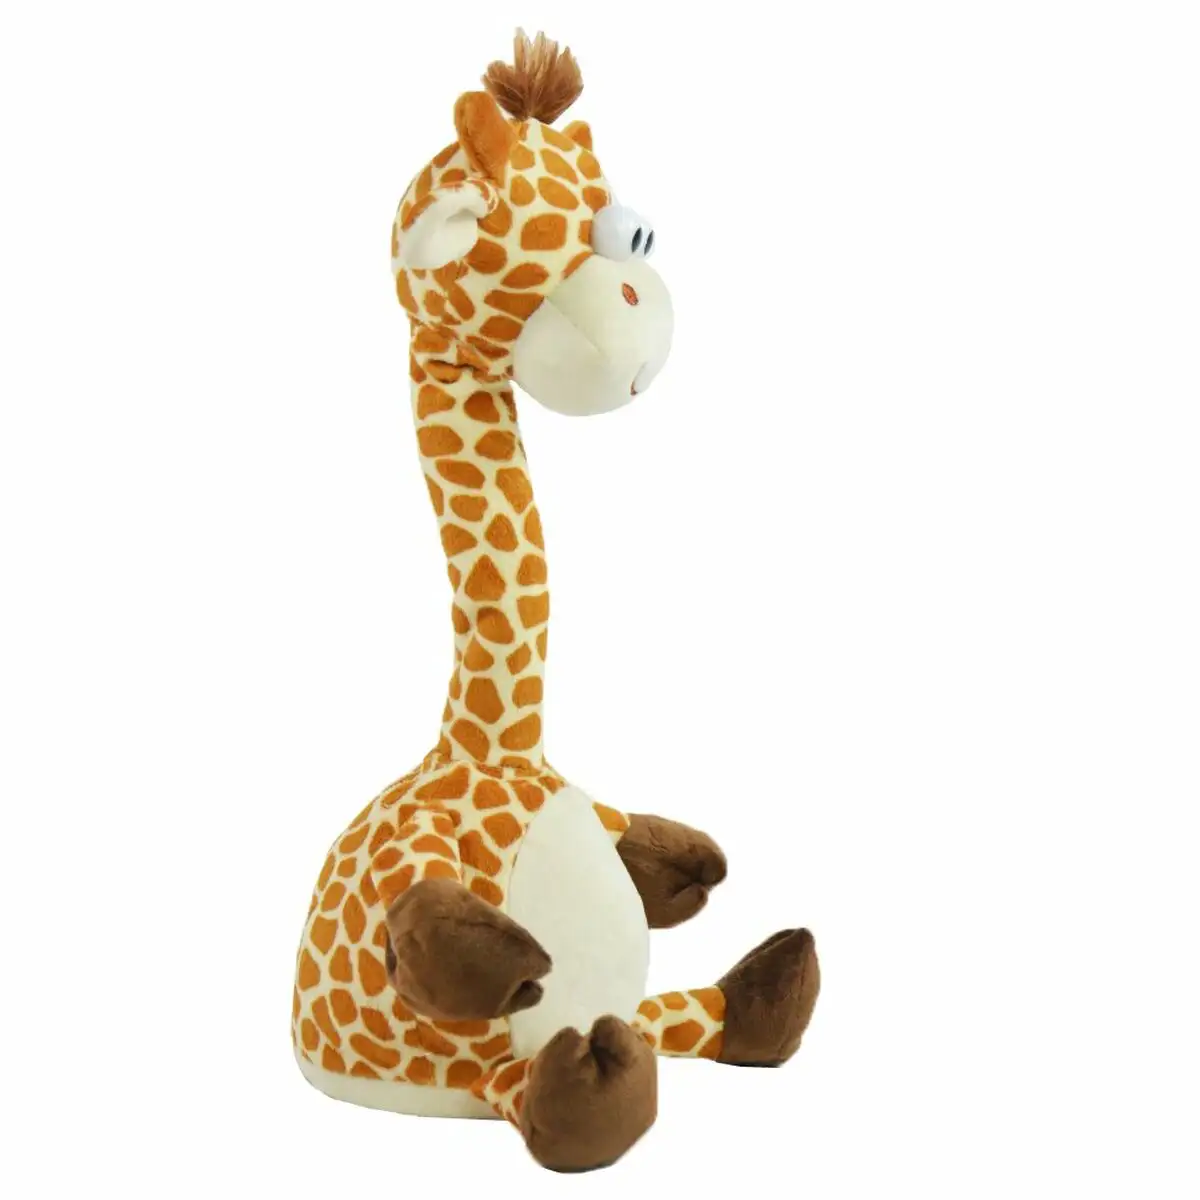 Jouet peluche girafe polyester multicouleur reconditionne a _1938. DIAYTAR SENEGAL - Là où Chaque Clic Compte. Parcourez notre boutique en ligne et laissez-vous guider vers des trouvailles uniques qui enrichiront votre quotidien.